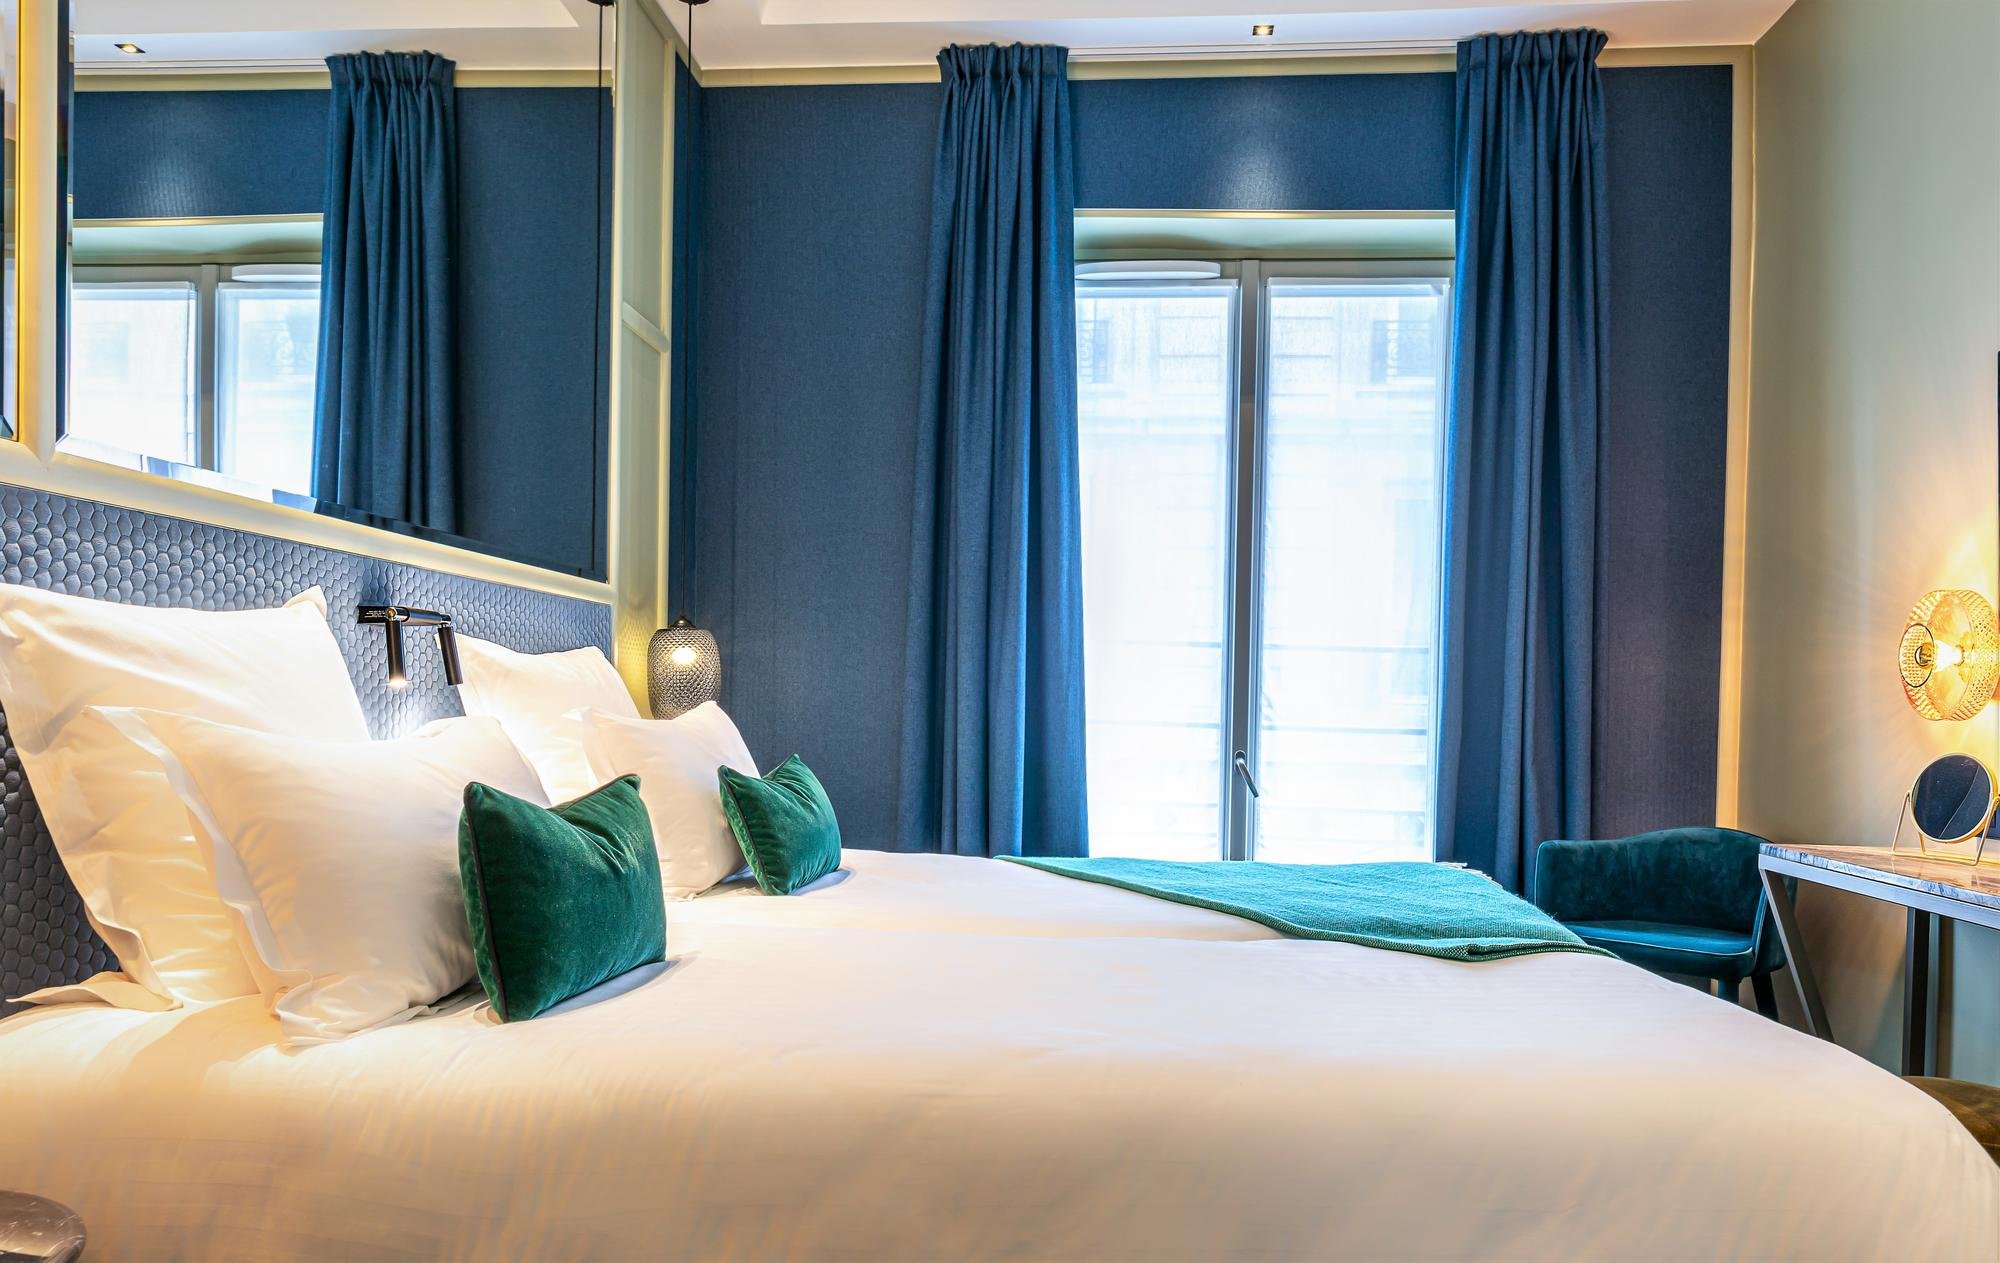 Hôtel Veryste - Verydouce Room - Bed